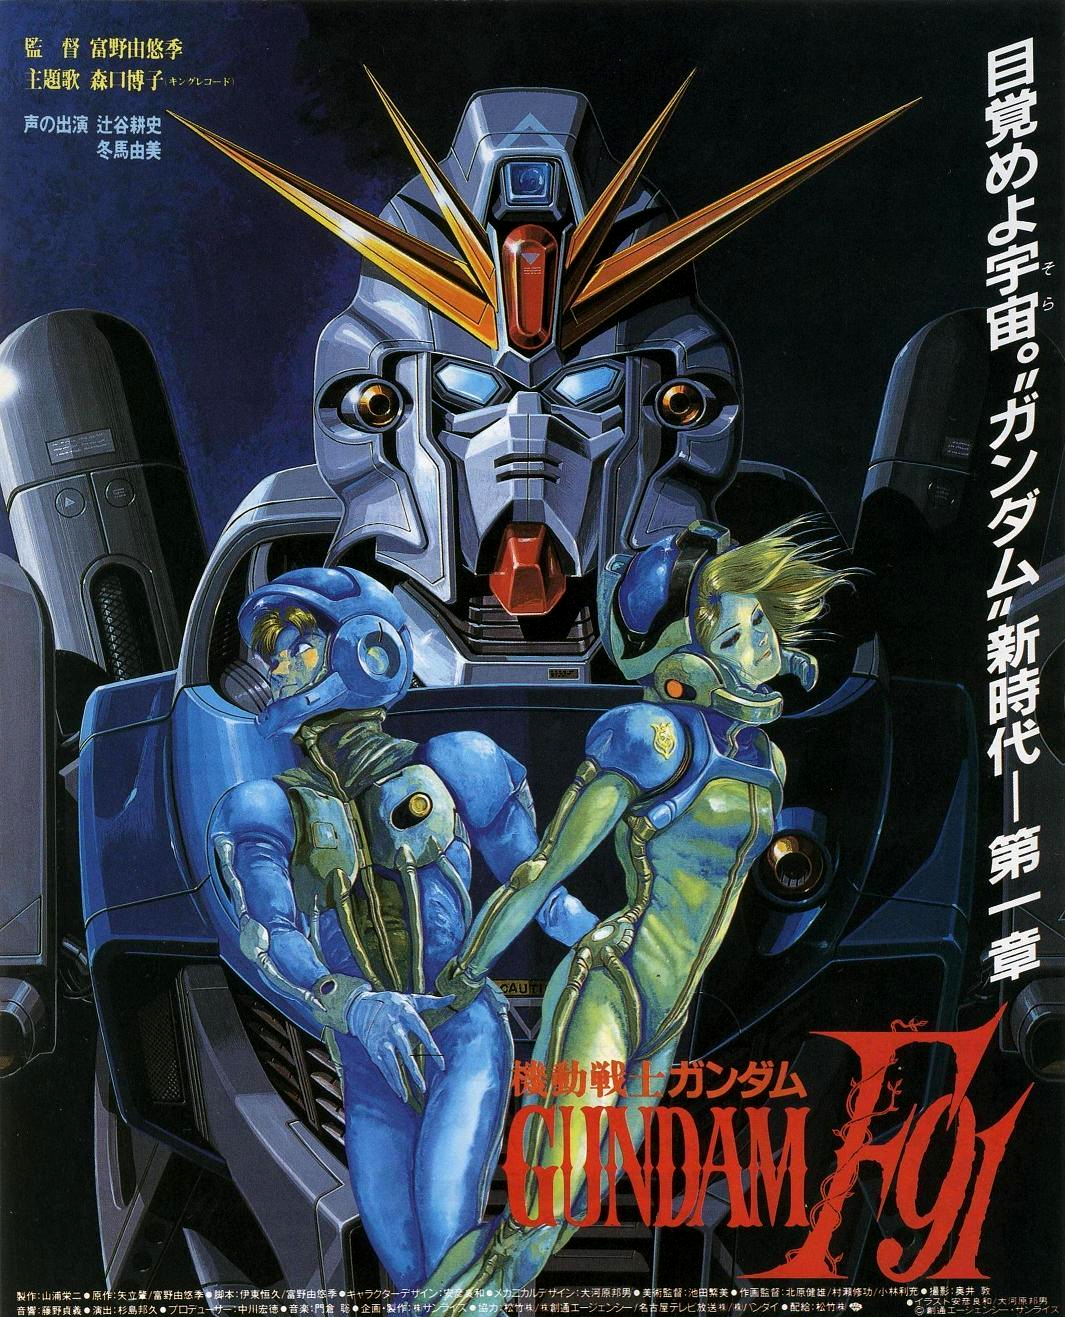 1991 Mobile Suit Gundam F91